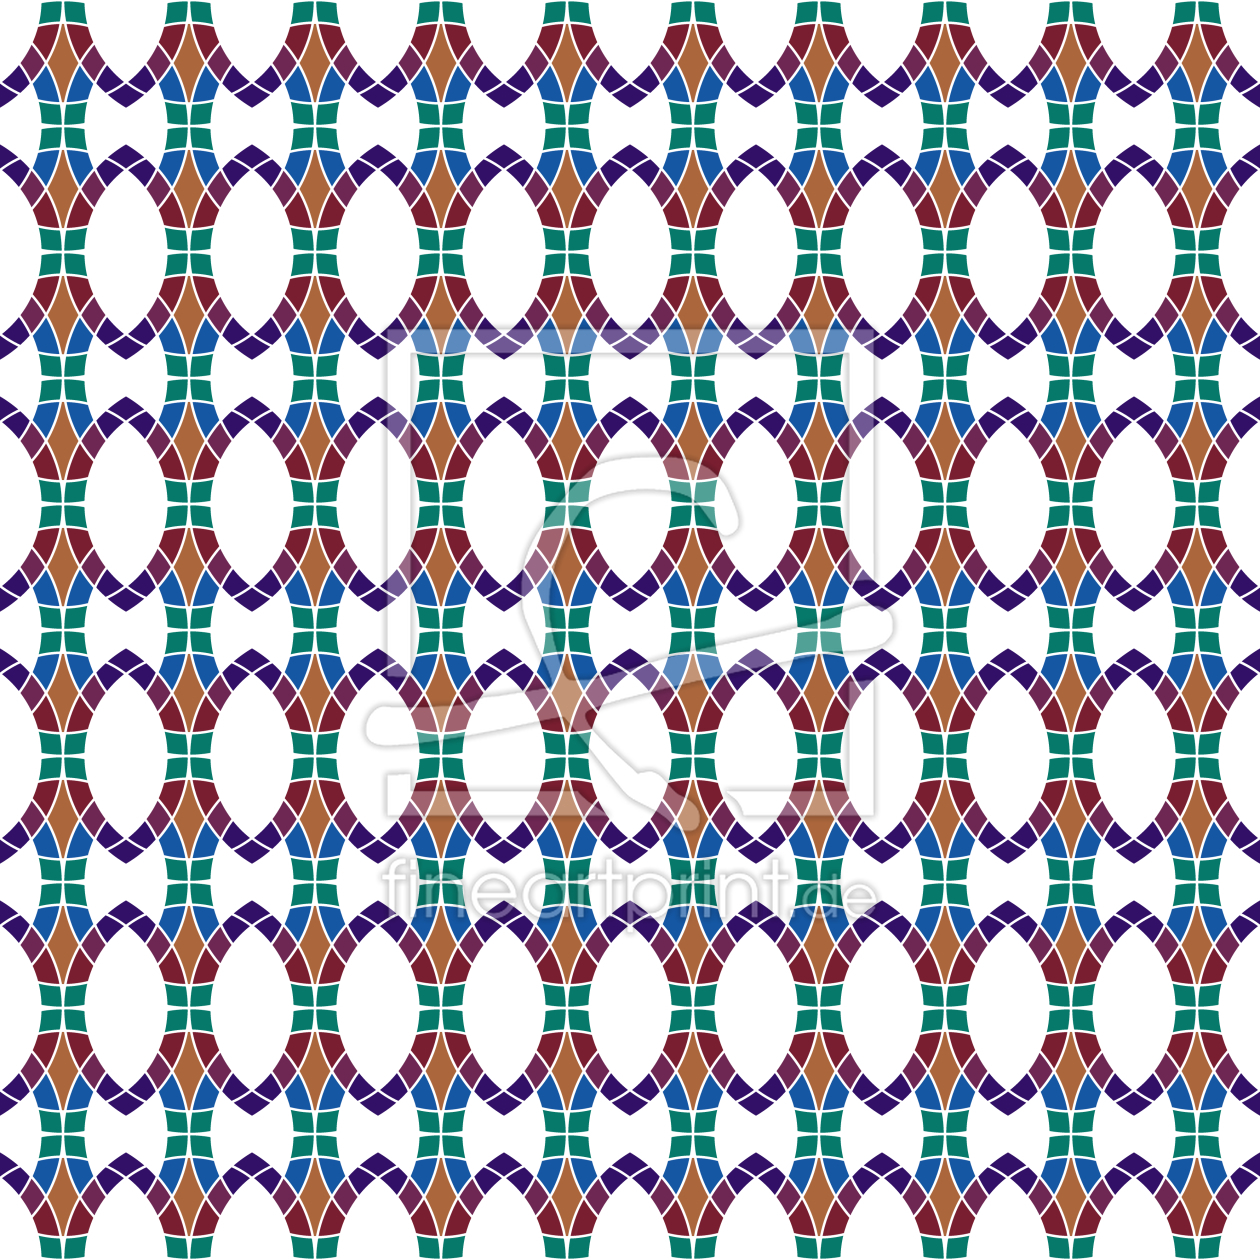 Bild-Nr.: 9007135 Mosaik Kette erstellt von patterndesigns-com